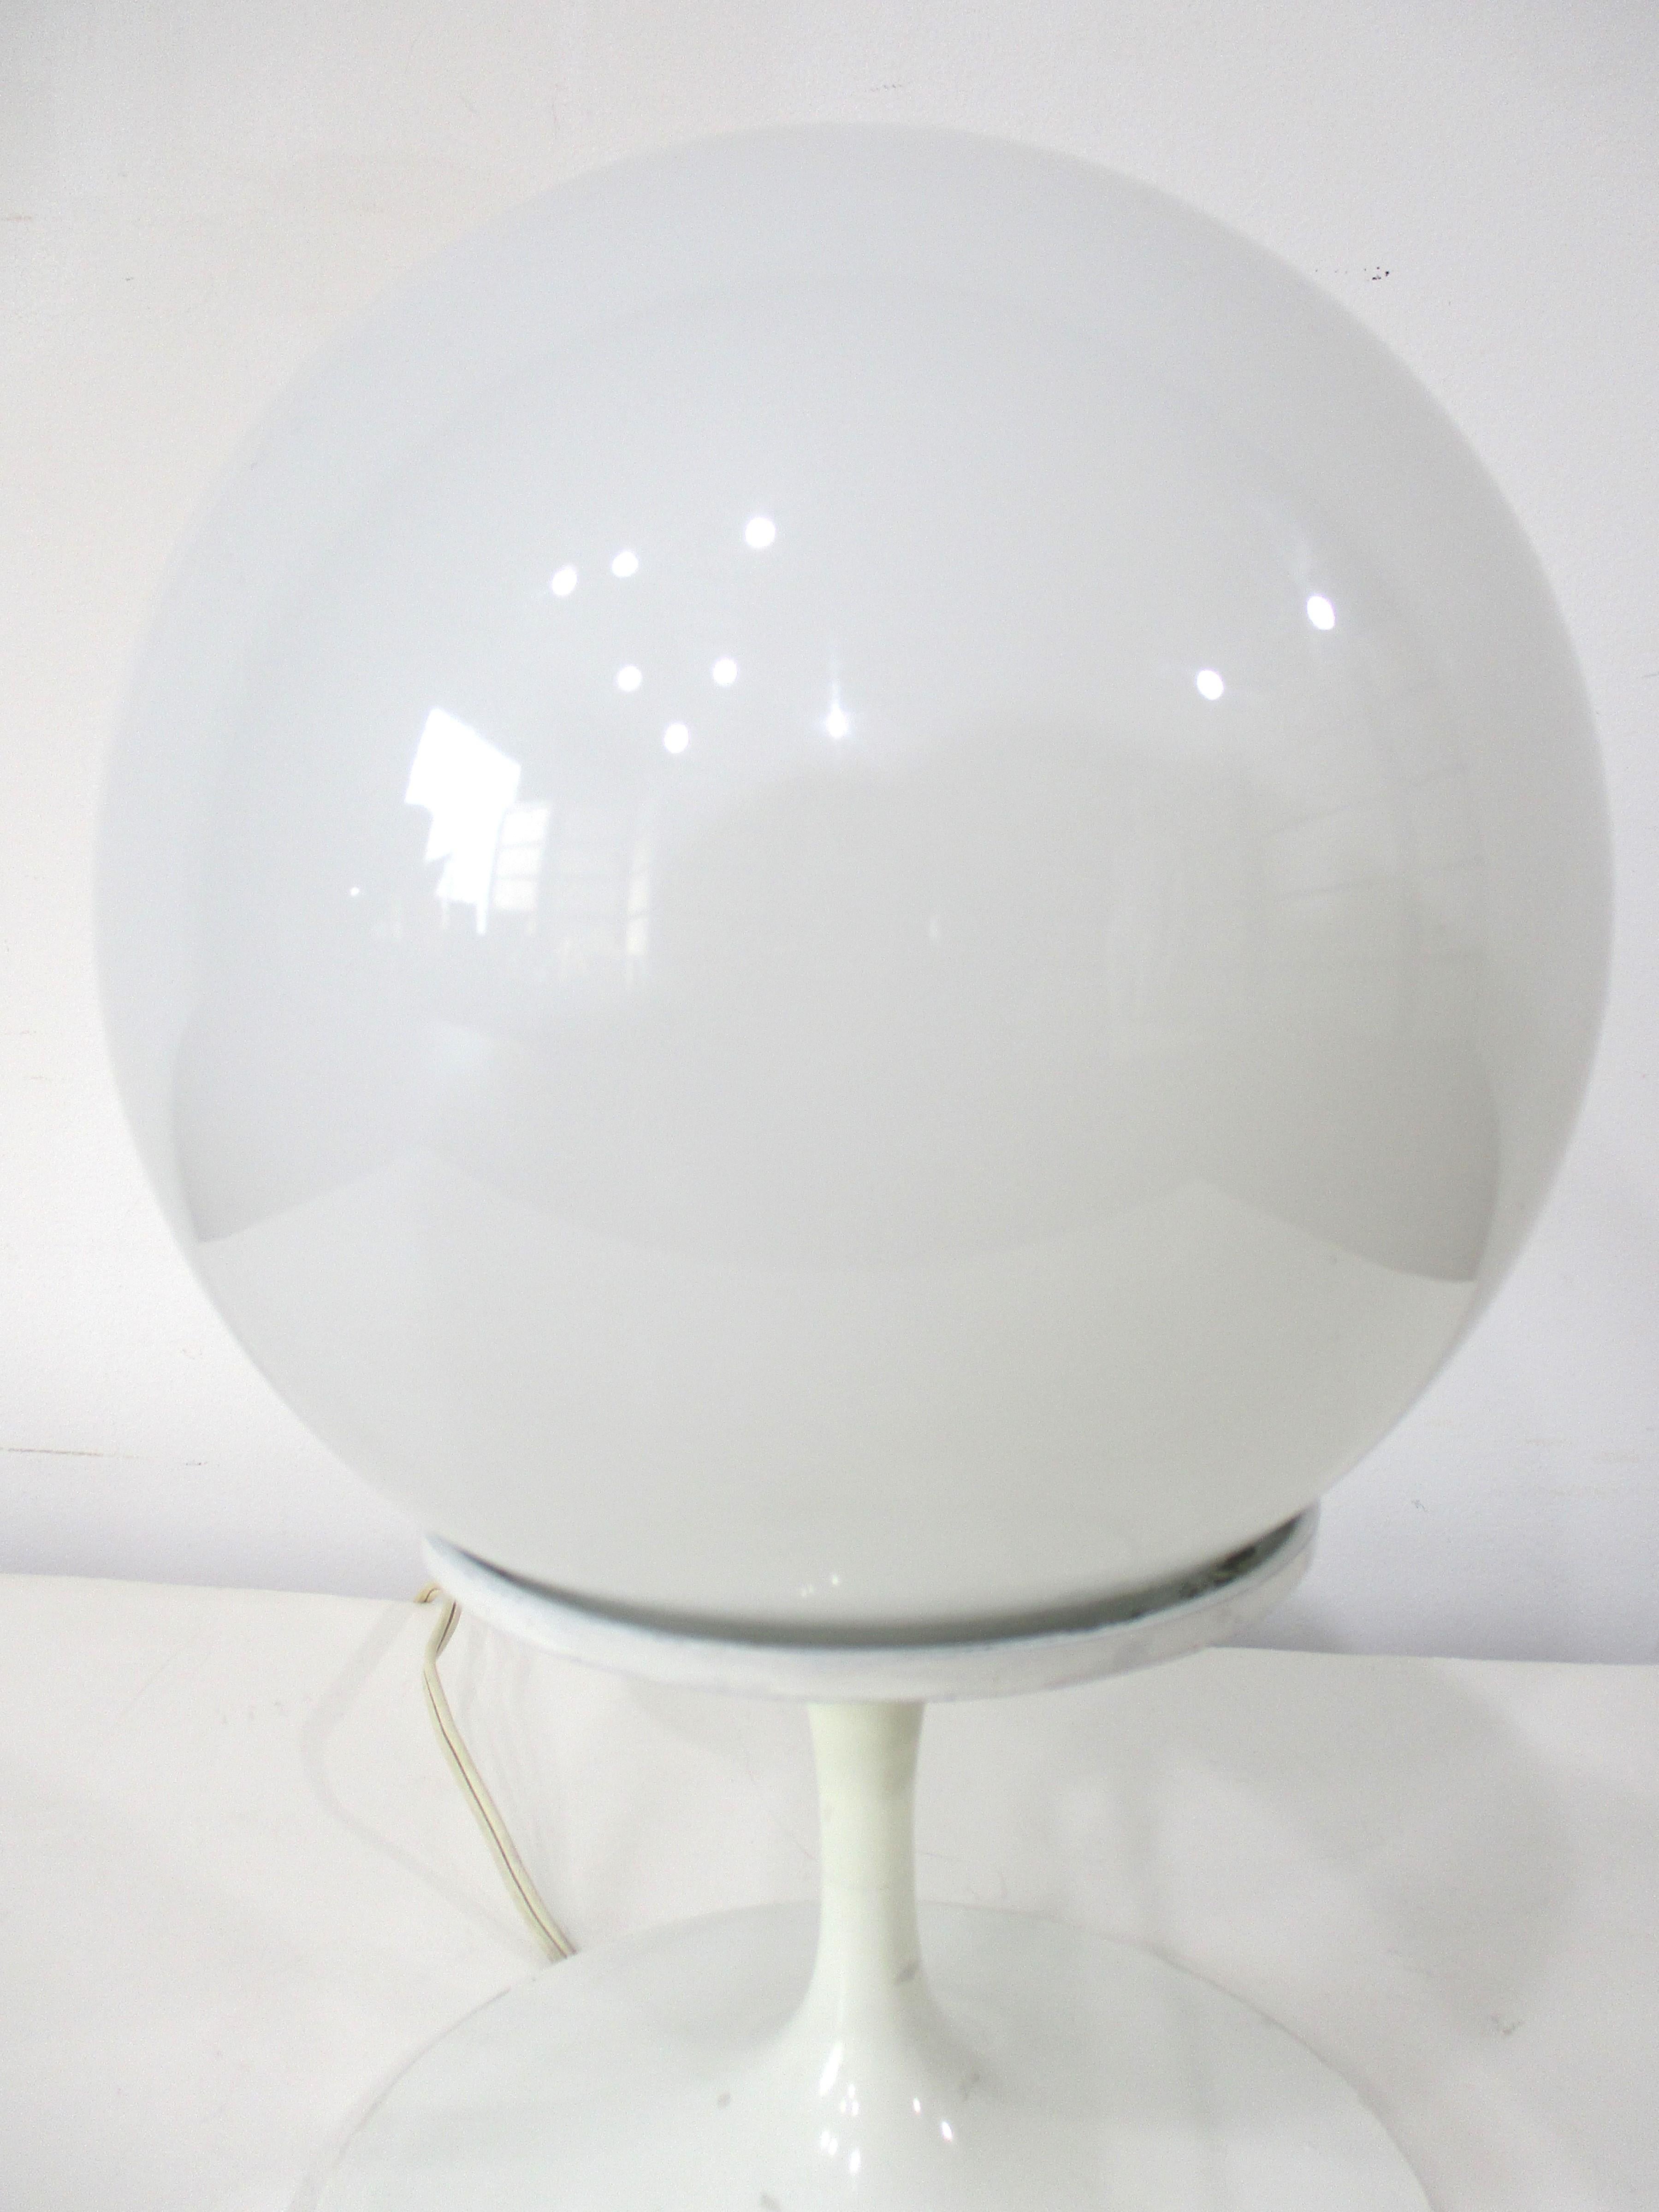 Lampe de table classique des années 1960-70 avec abat-jour rond en verre blanc. Conçue par Bill Curry pour Design/One, la base en métal est de style tulipe, à la manière d'Eero Saarinen, un look simple pour donner de l'éclat à n'importe quelle